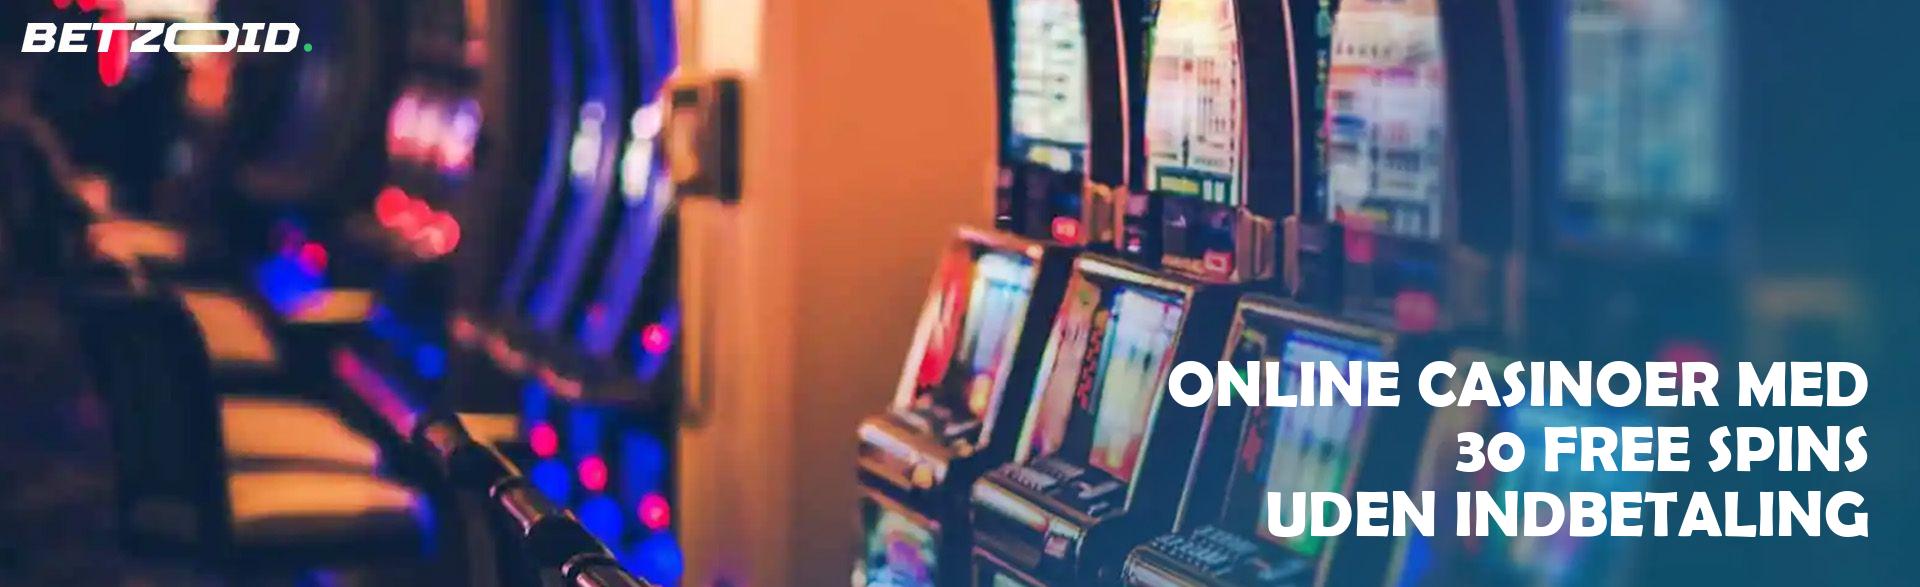 Online Casinoer med 30 Free Spins uden Indbetaling.